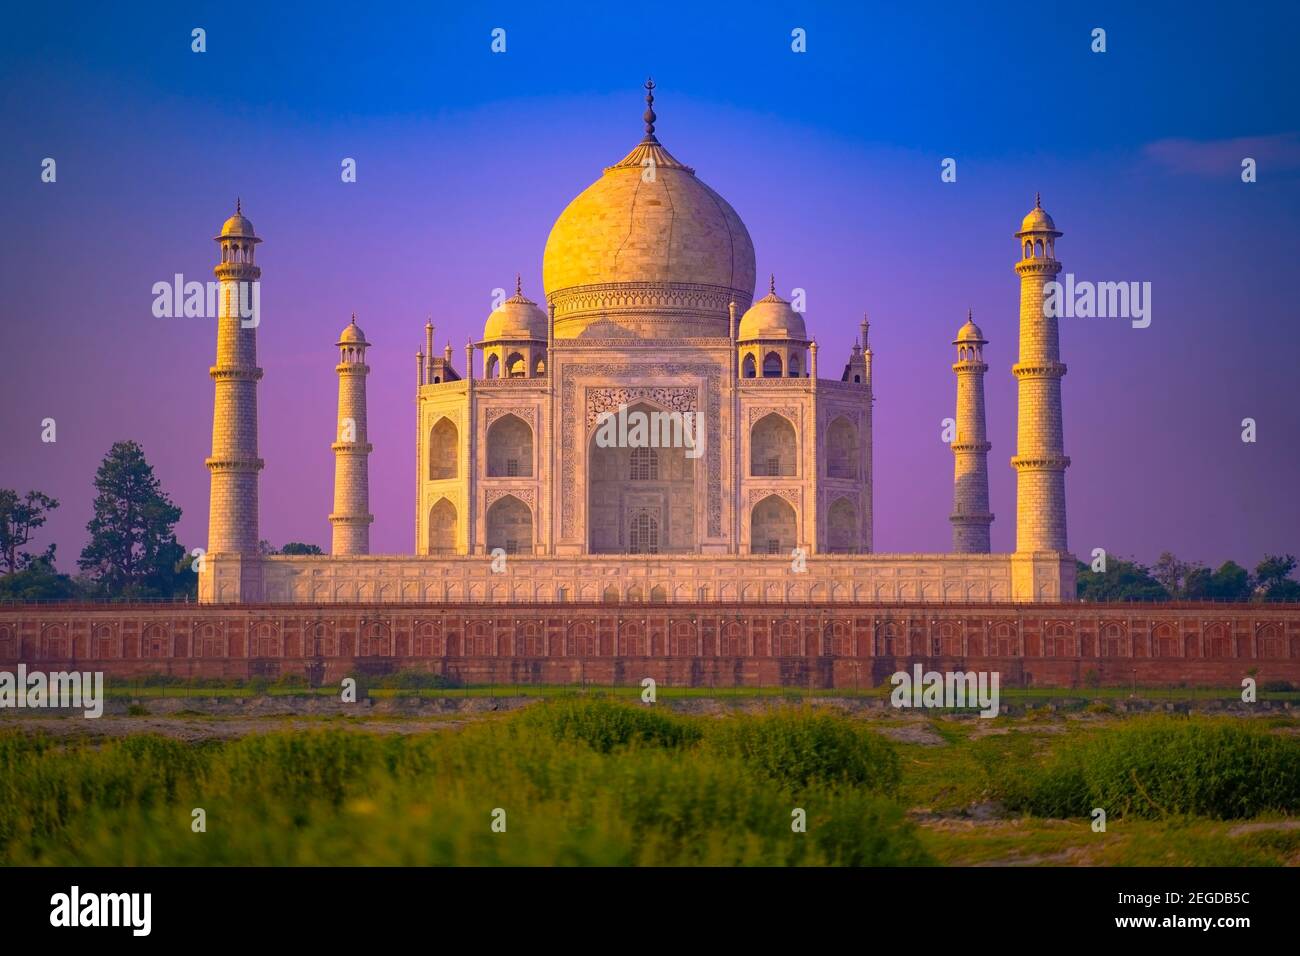 Das Taj Mahal ist ein Elfenbein - weißer Marmor mausoleum am südlichen Ufer des Yamuna Flusses in der indischen Stadt Agra. Stockfoto